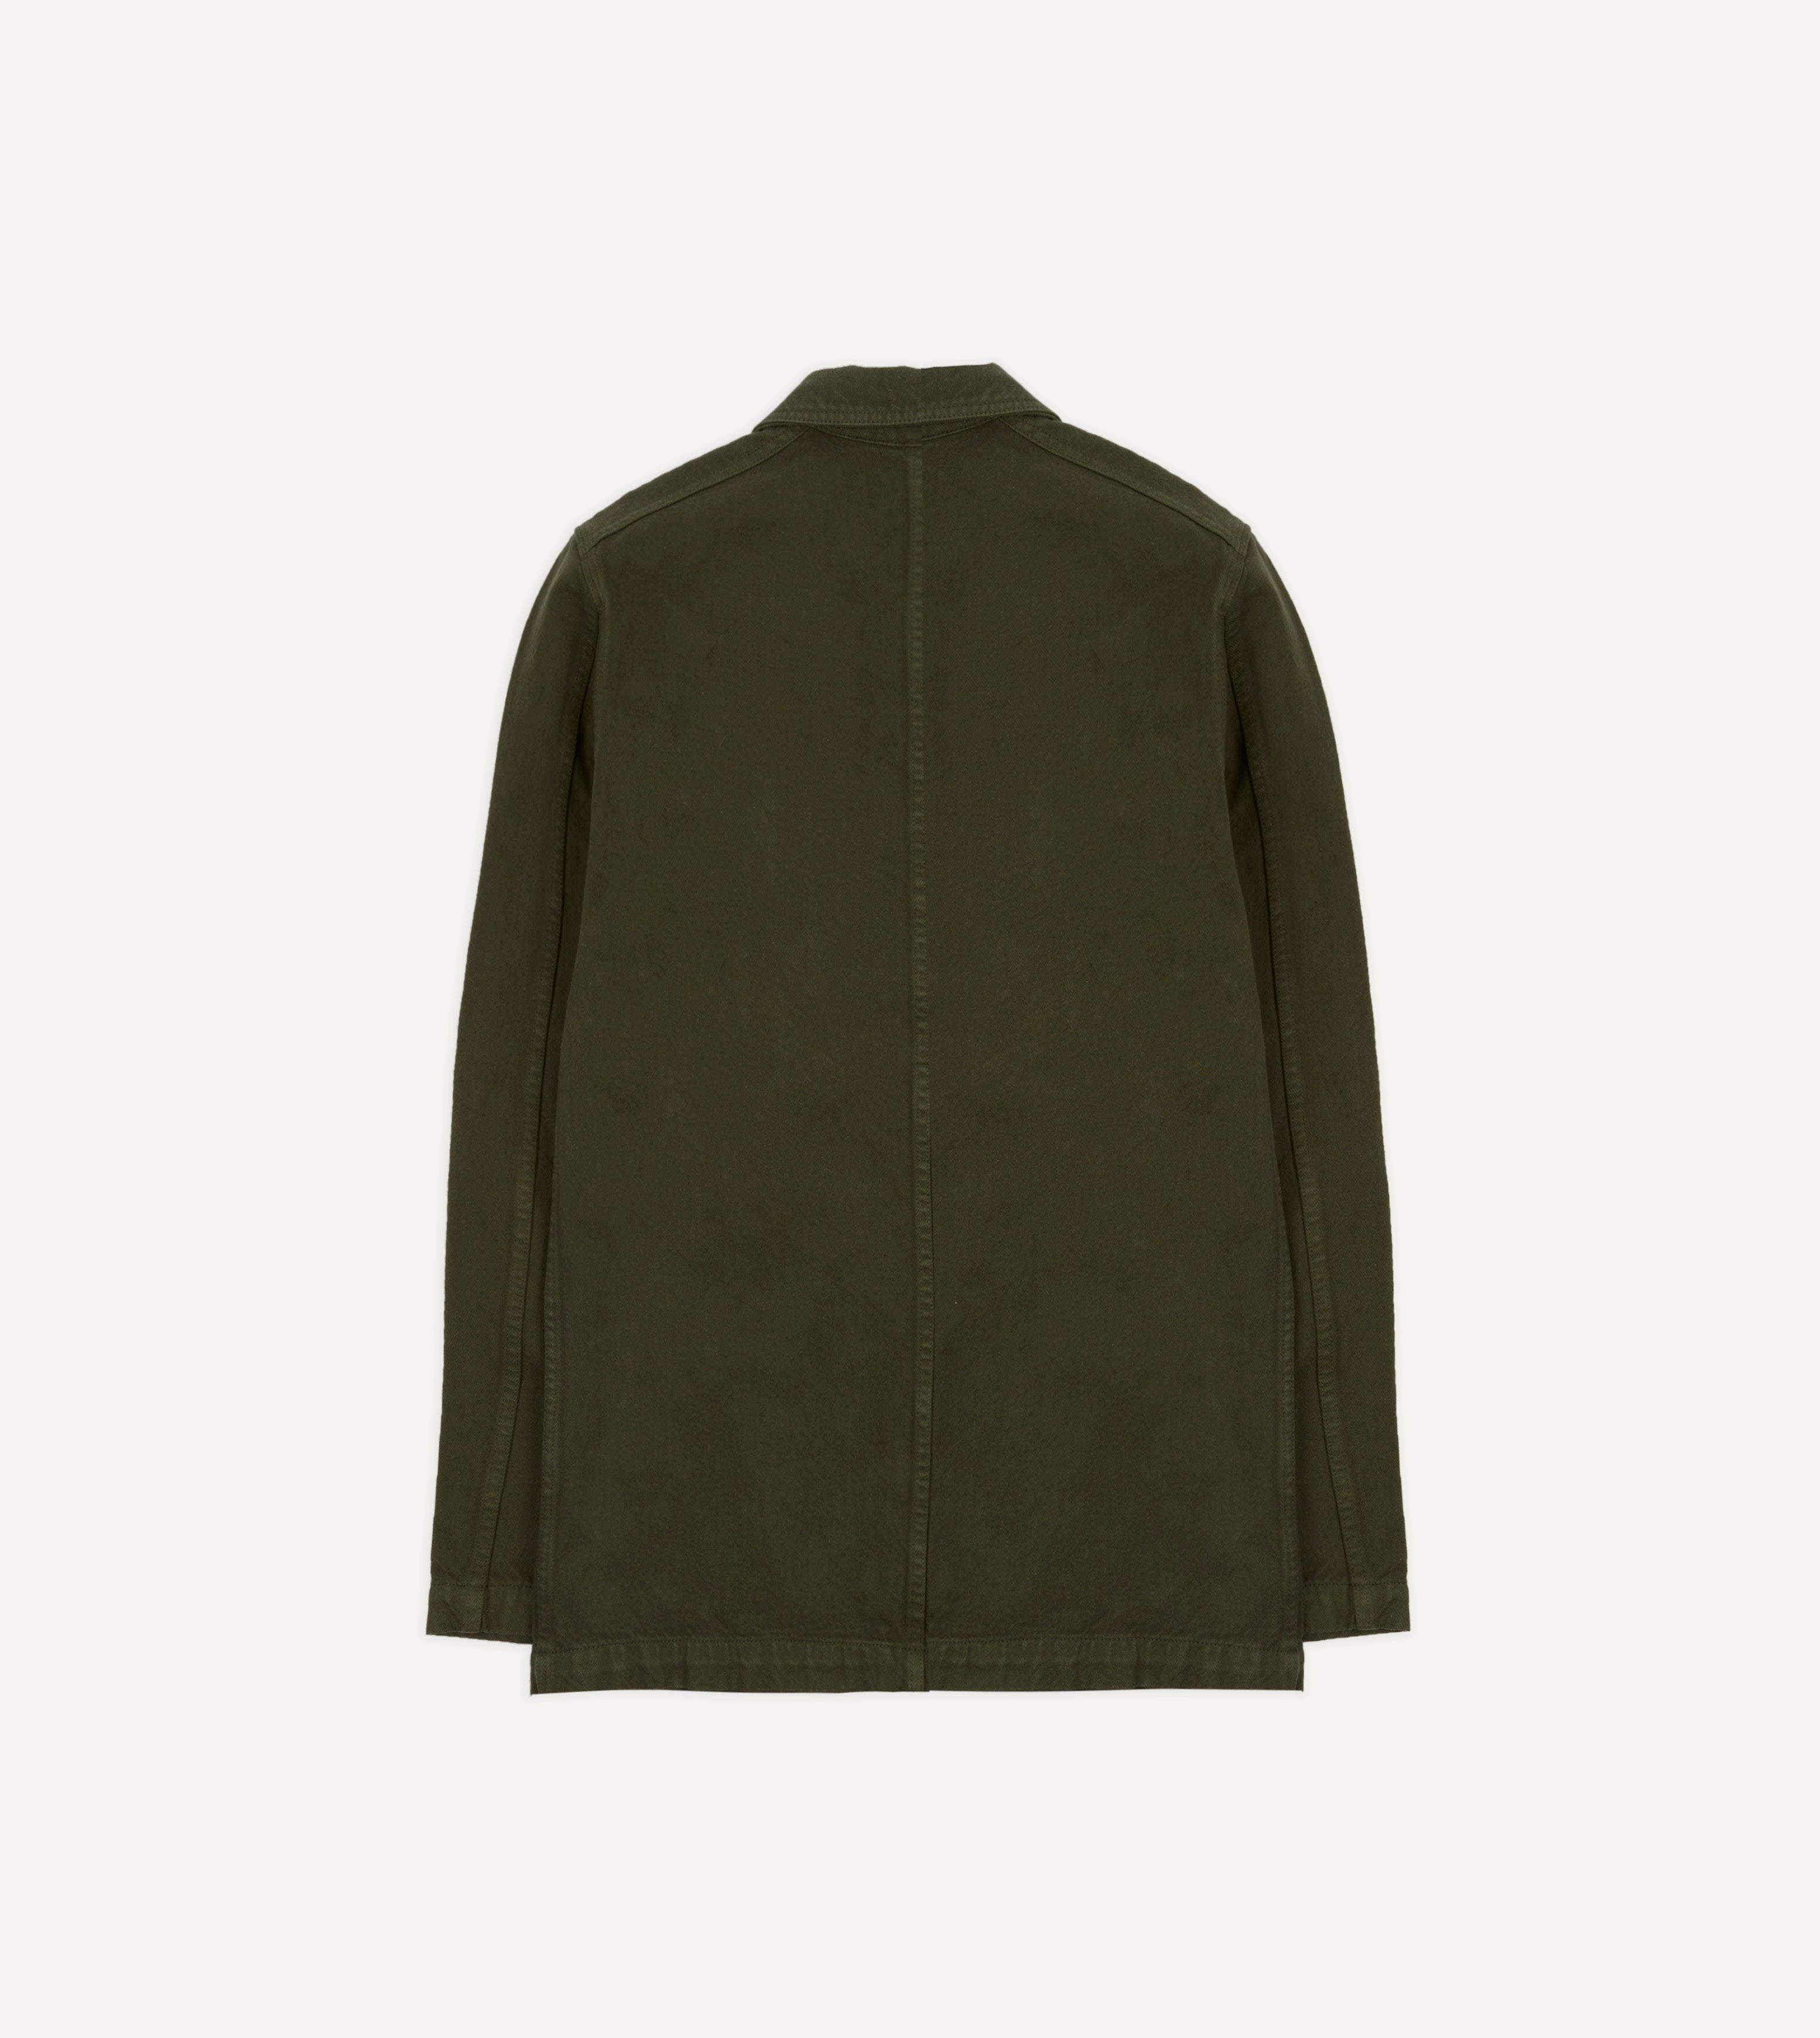 Green Heavy Twill Cotton Five-Pocket Chore Jacket – Drakes US